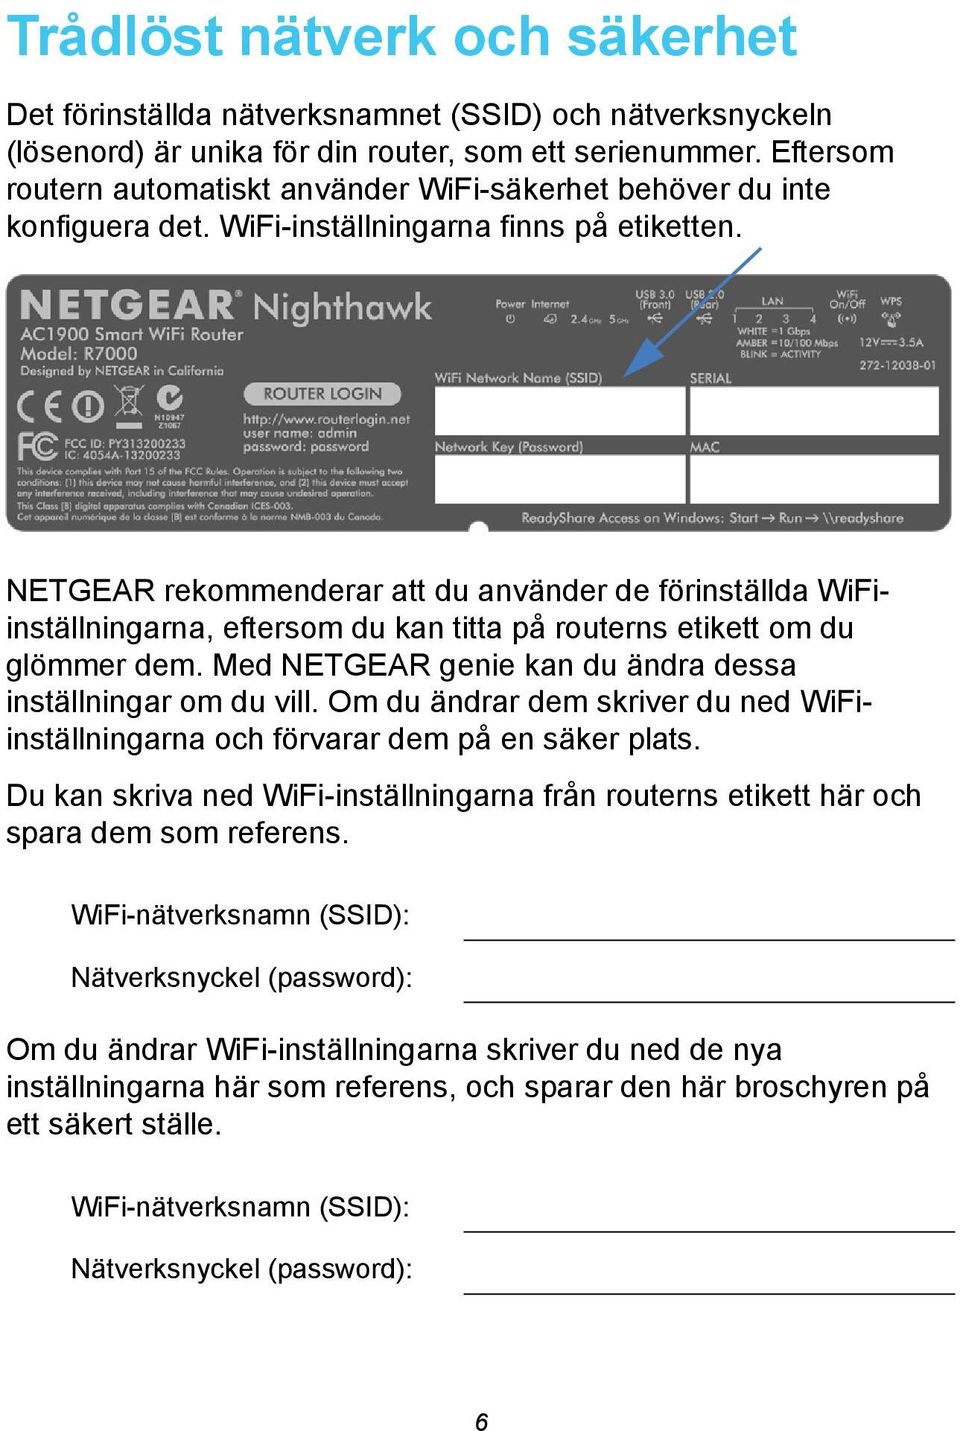 NETGEAR rekommenderar att du använder de förinställda WiFiinställningarna, eftersom du kan titta på routerns etikett om du glömmer dem. Med NETGEAR genie kan du ändra dessa inställningar om du vill.